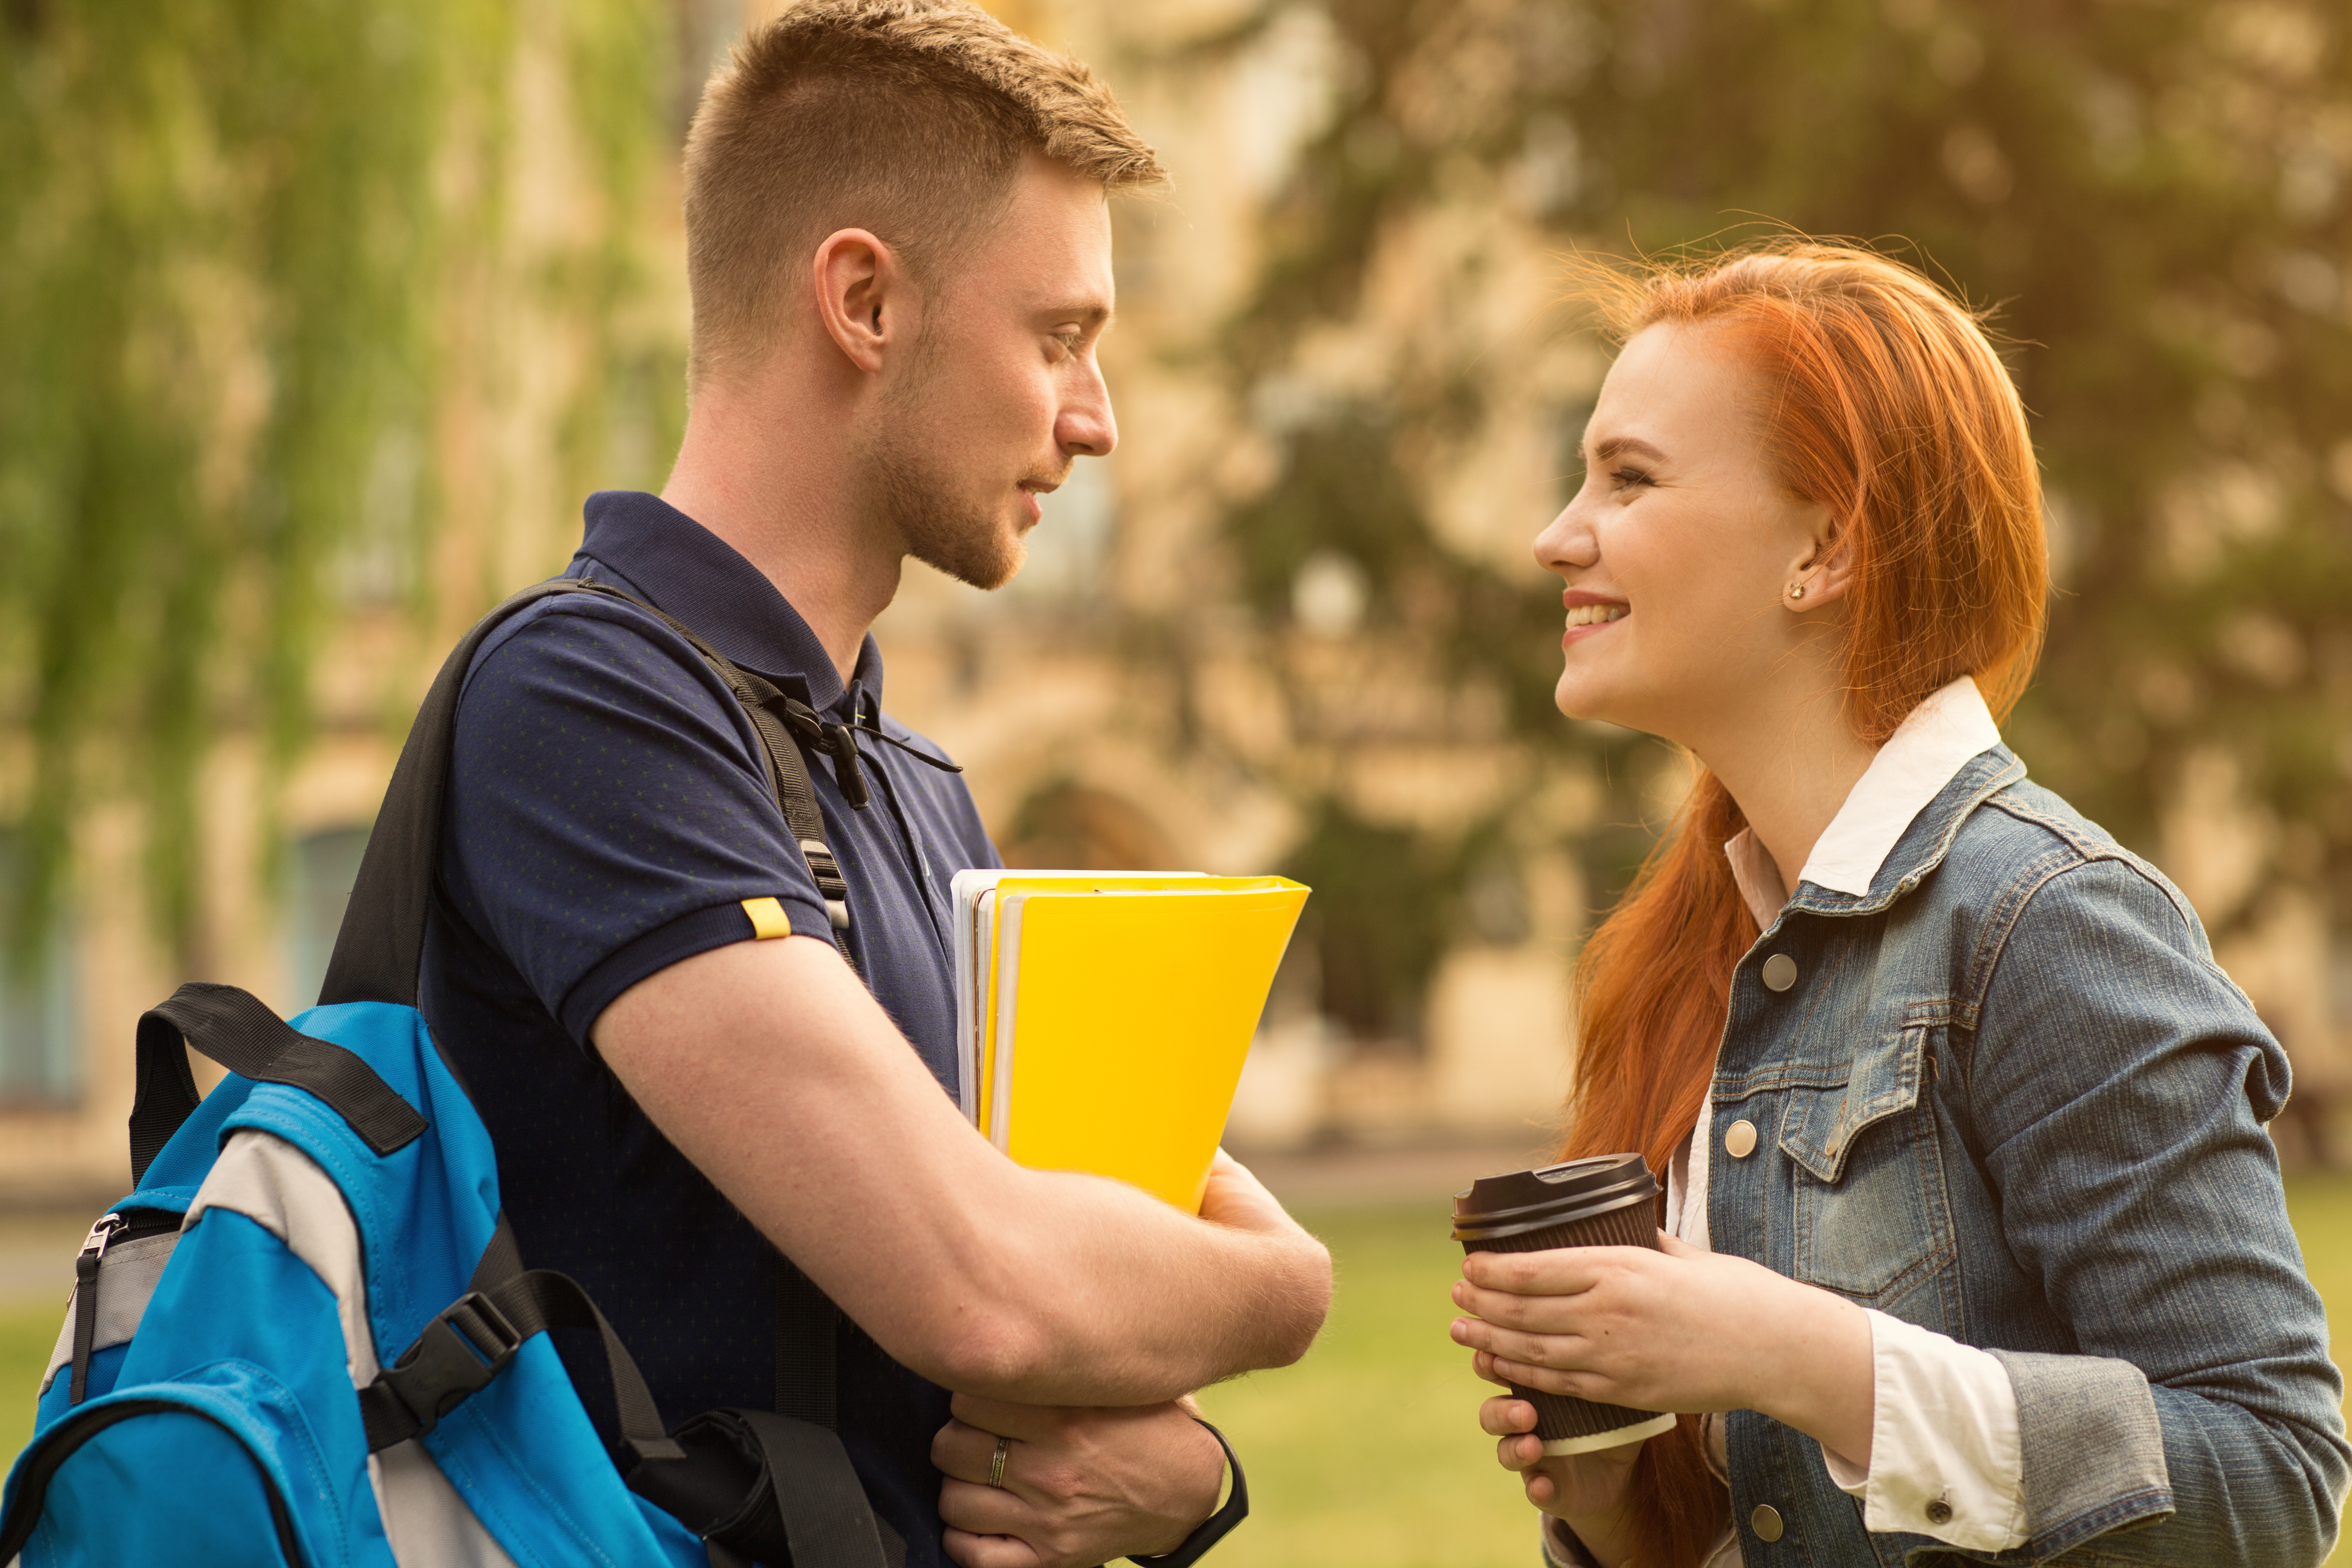 Deux étudiants se souriant l'un à l'autre | Source : Shutterstock